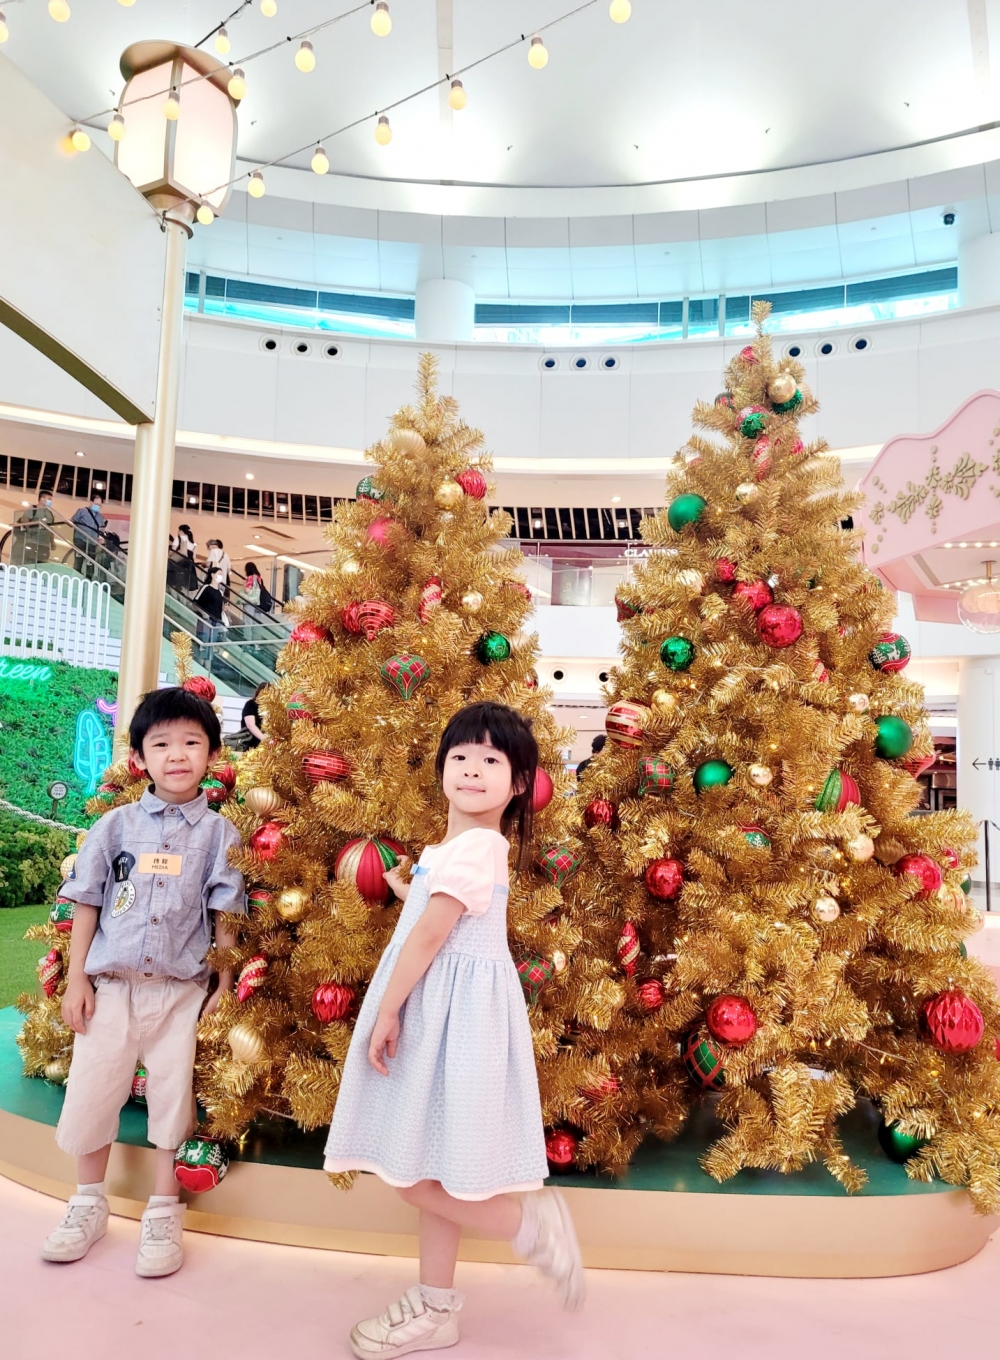 金燦燦的聖誕樹充滿異國情懷。